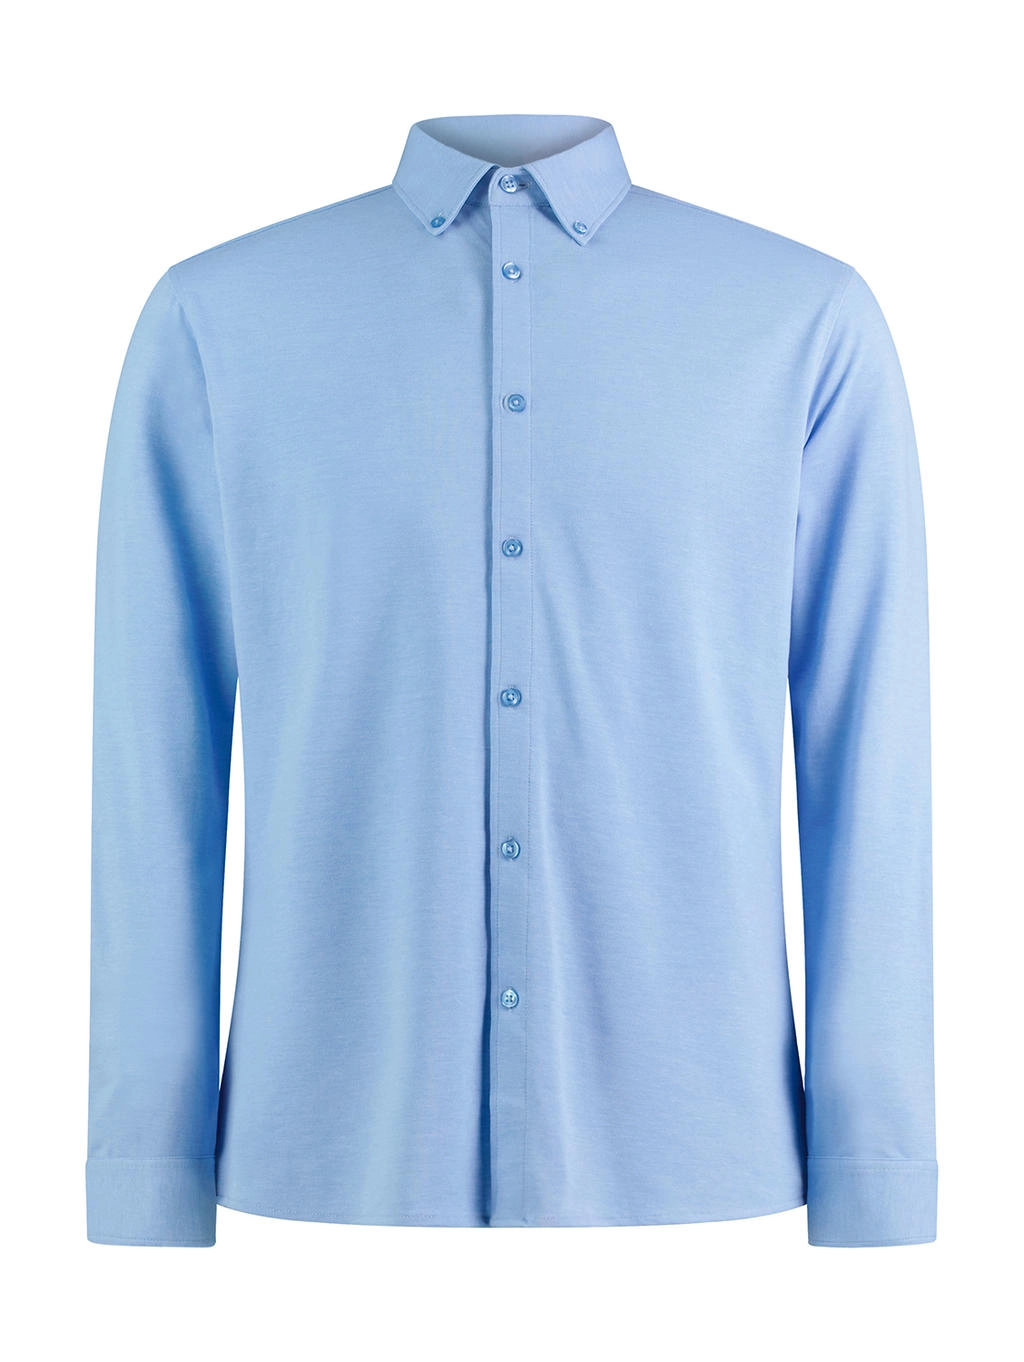 Tailored Fit Superwash® 60º Pique Shirt zum Besticken und Bedrucken in der Farbe Light Heather Blue mit Ihren Logo, Schriftzug oder Motiv.